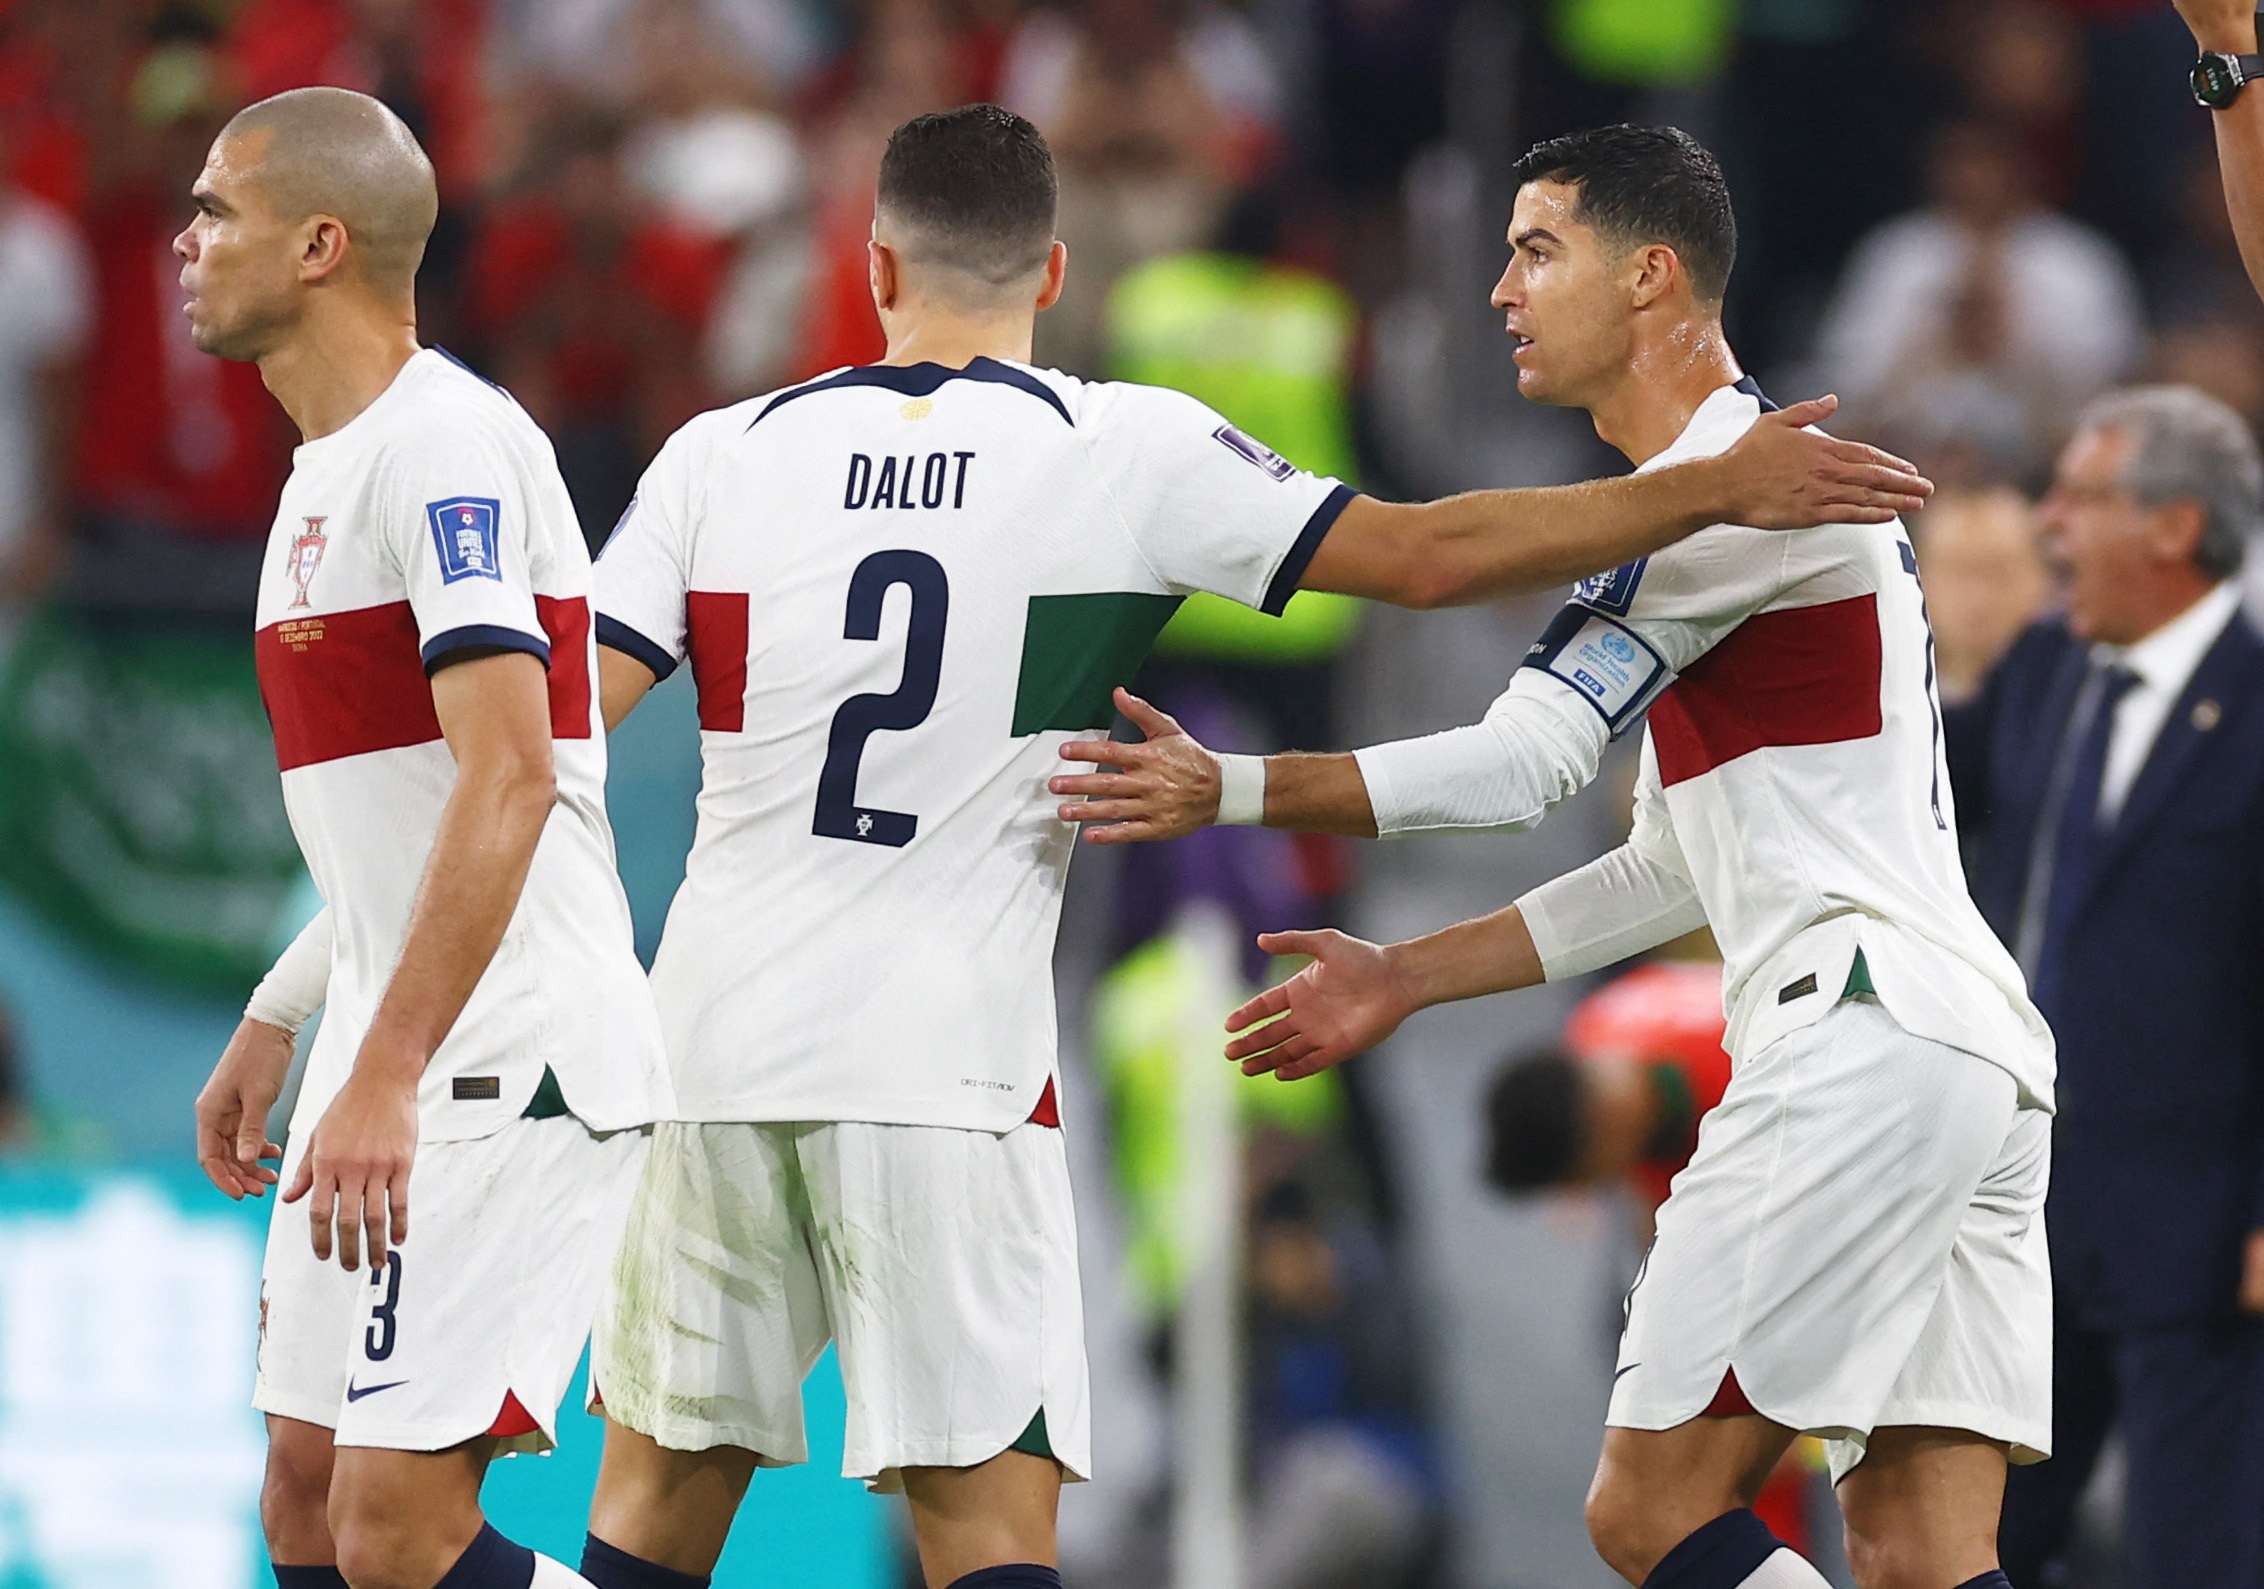 Cristiano Ronaldo ingresó y le dieron la cinta de capitán de Portugal (REUTERS/Kai Pfaffenbach)